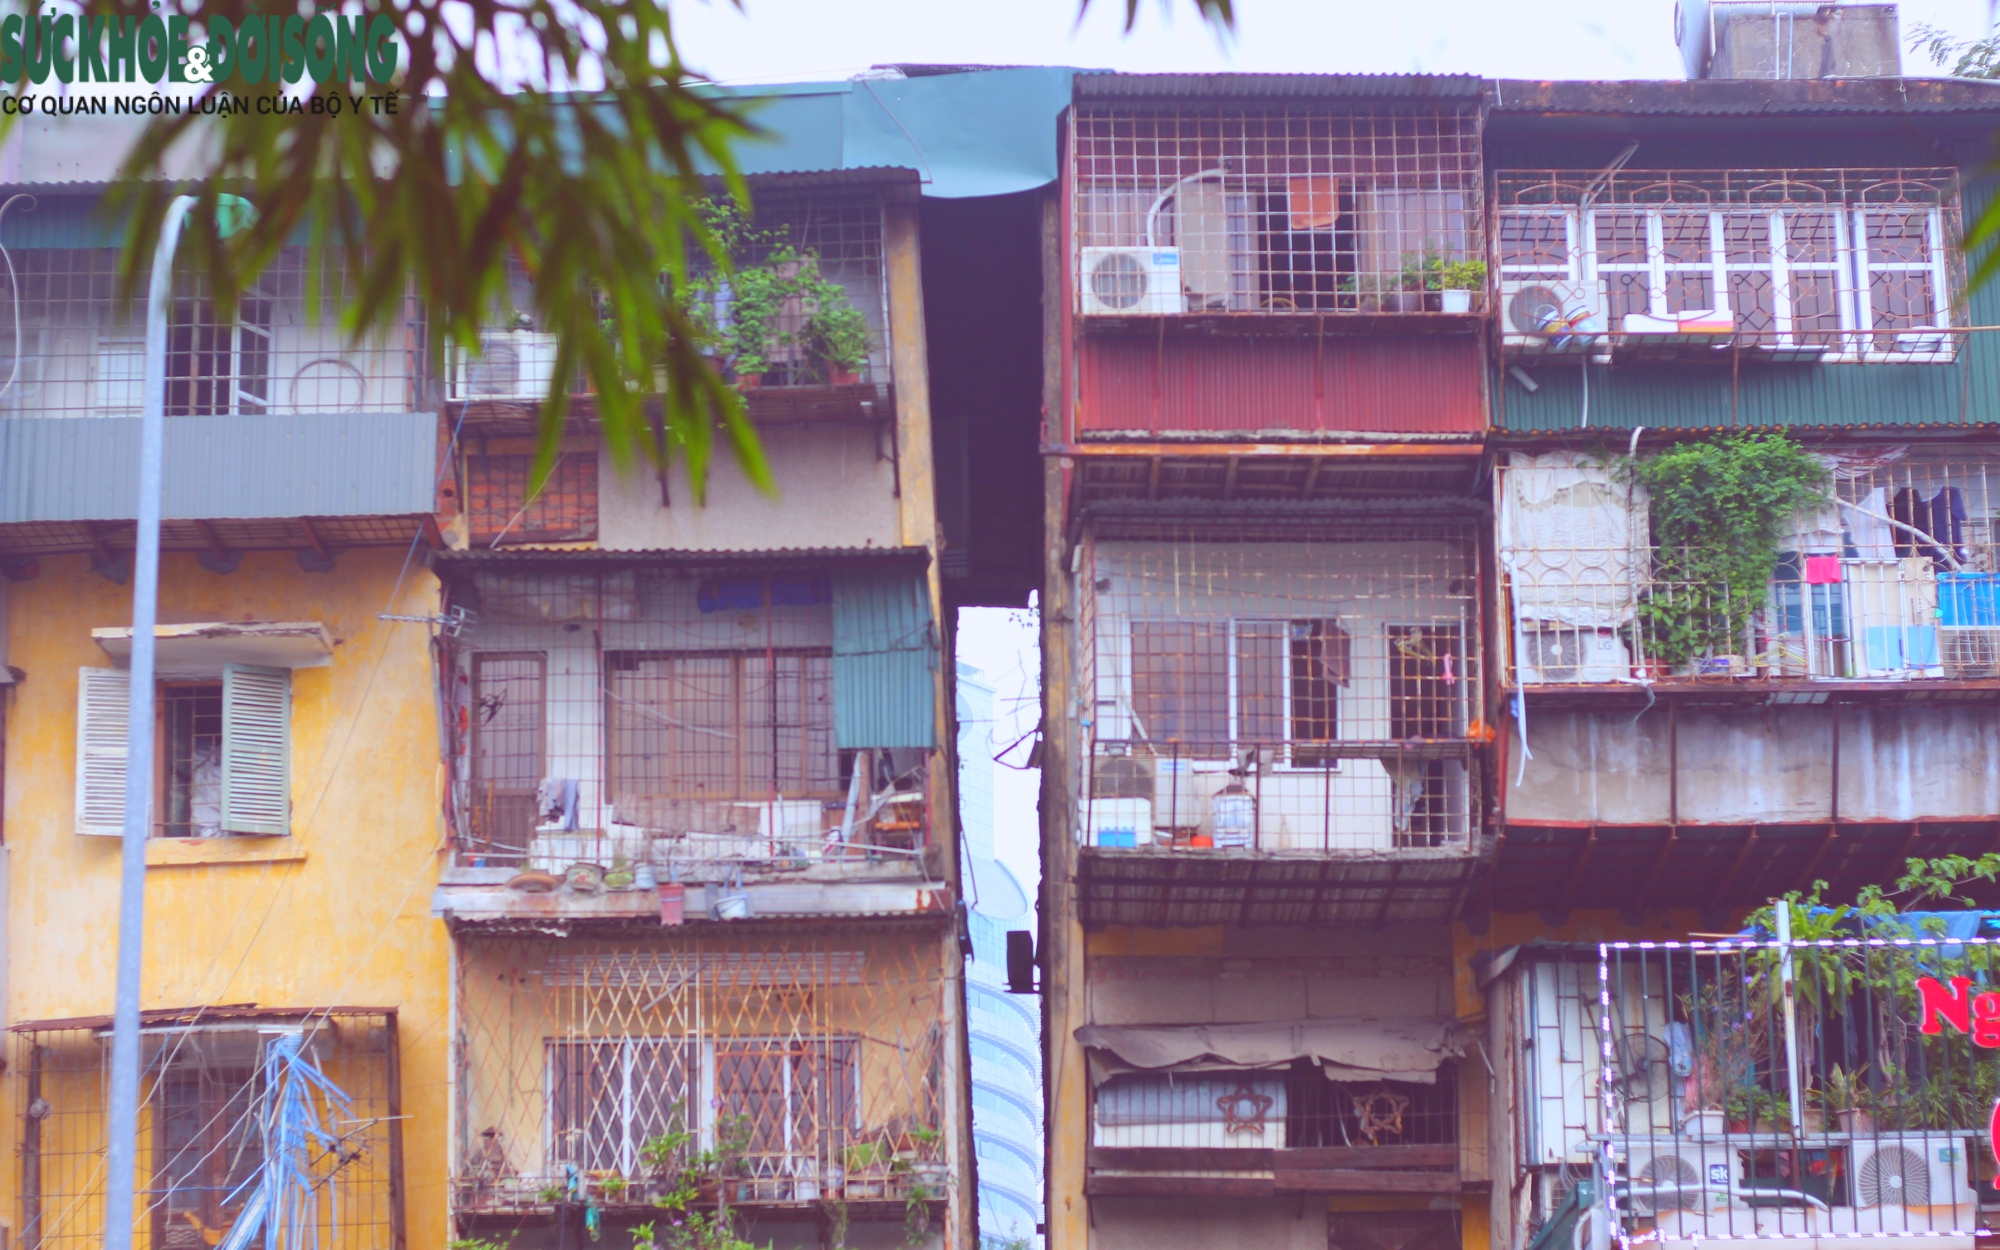 Mục sở thị những toà nhà "chung cư mơ ước" một thời trong nội thành Hà Nội những năm 80